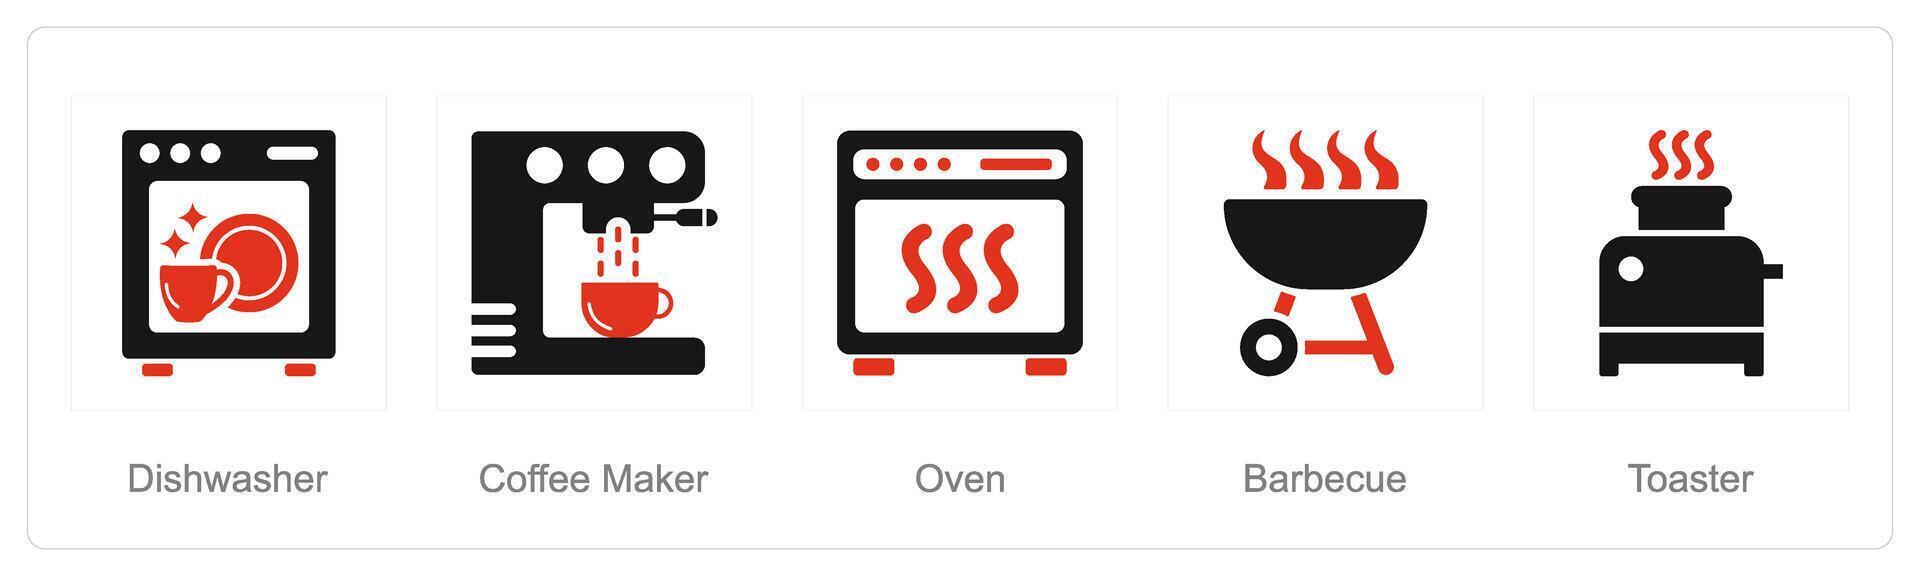 un' impostato di 5 casa apparecchio icone come lavastoviglie, caffè creatore, forno vettore